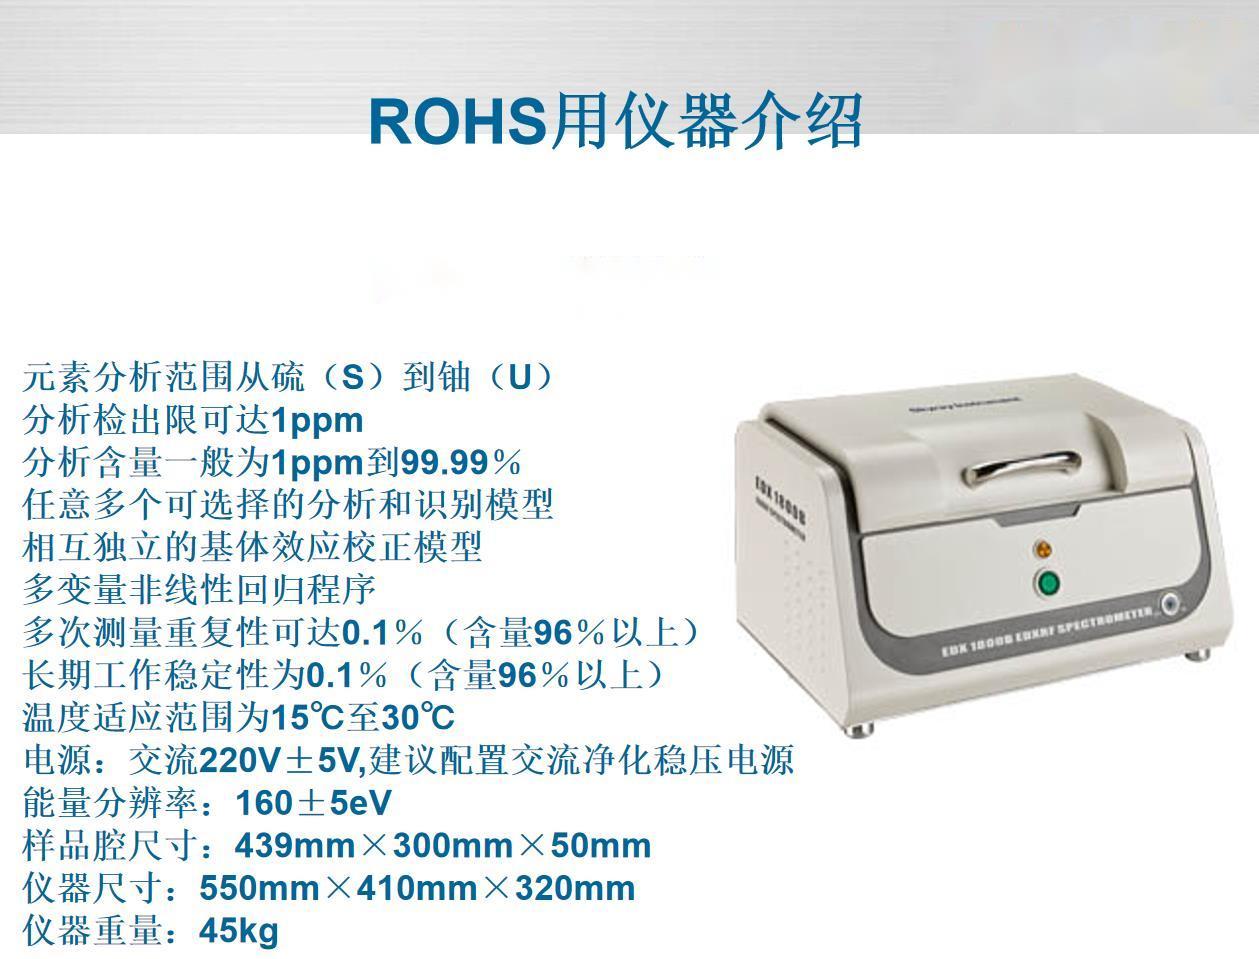 洛阳玩具行业ROHS标准光谱分析仪